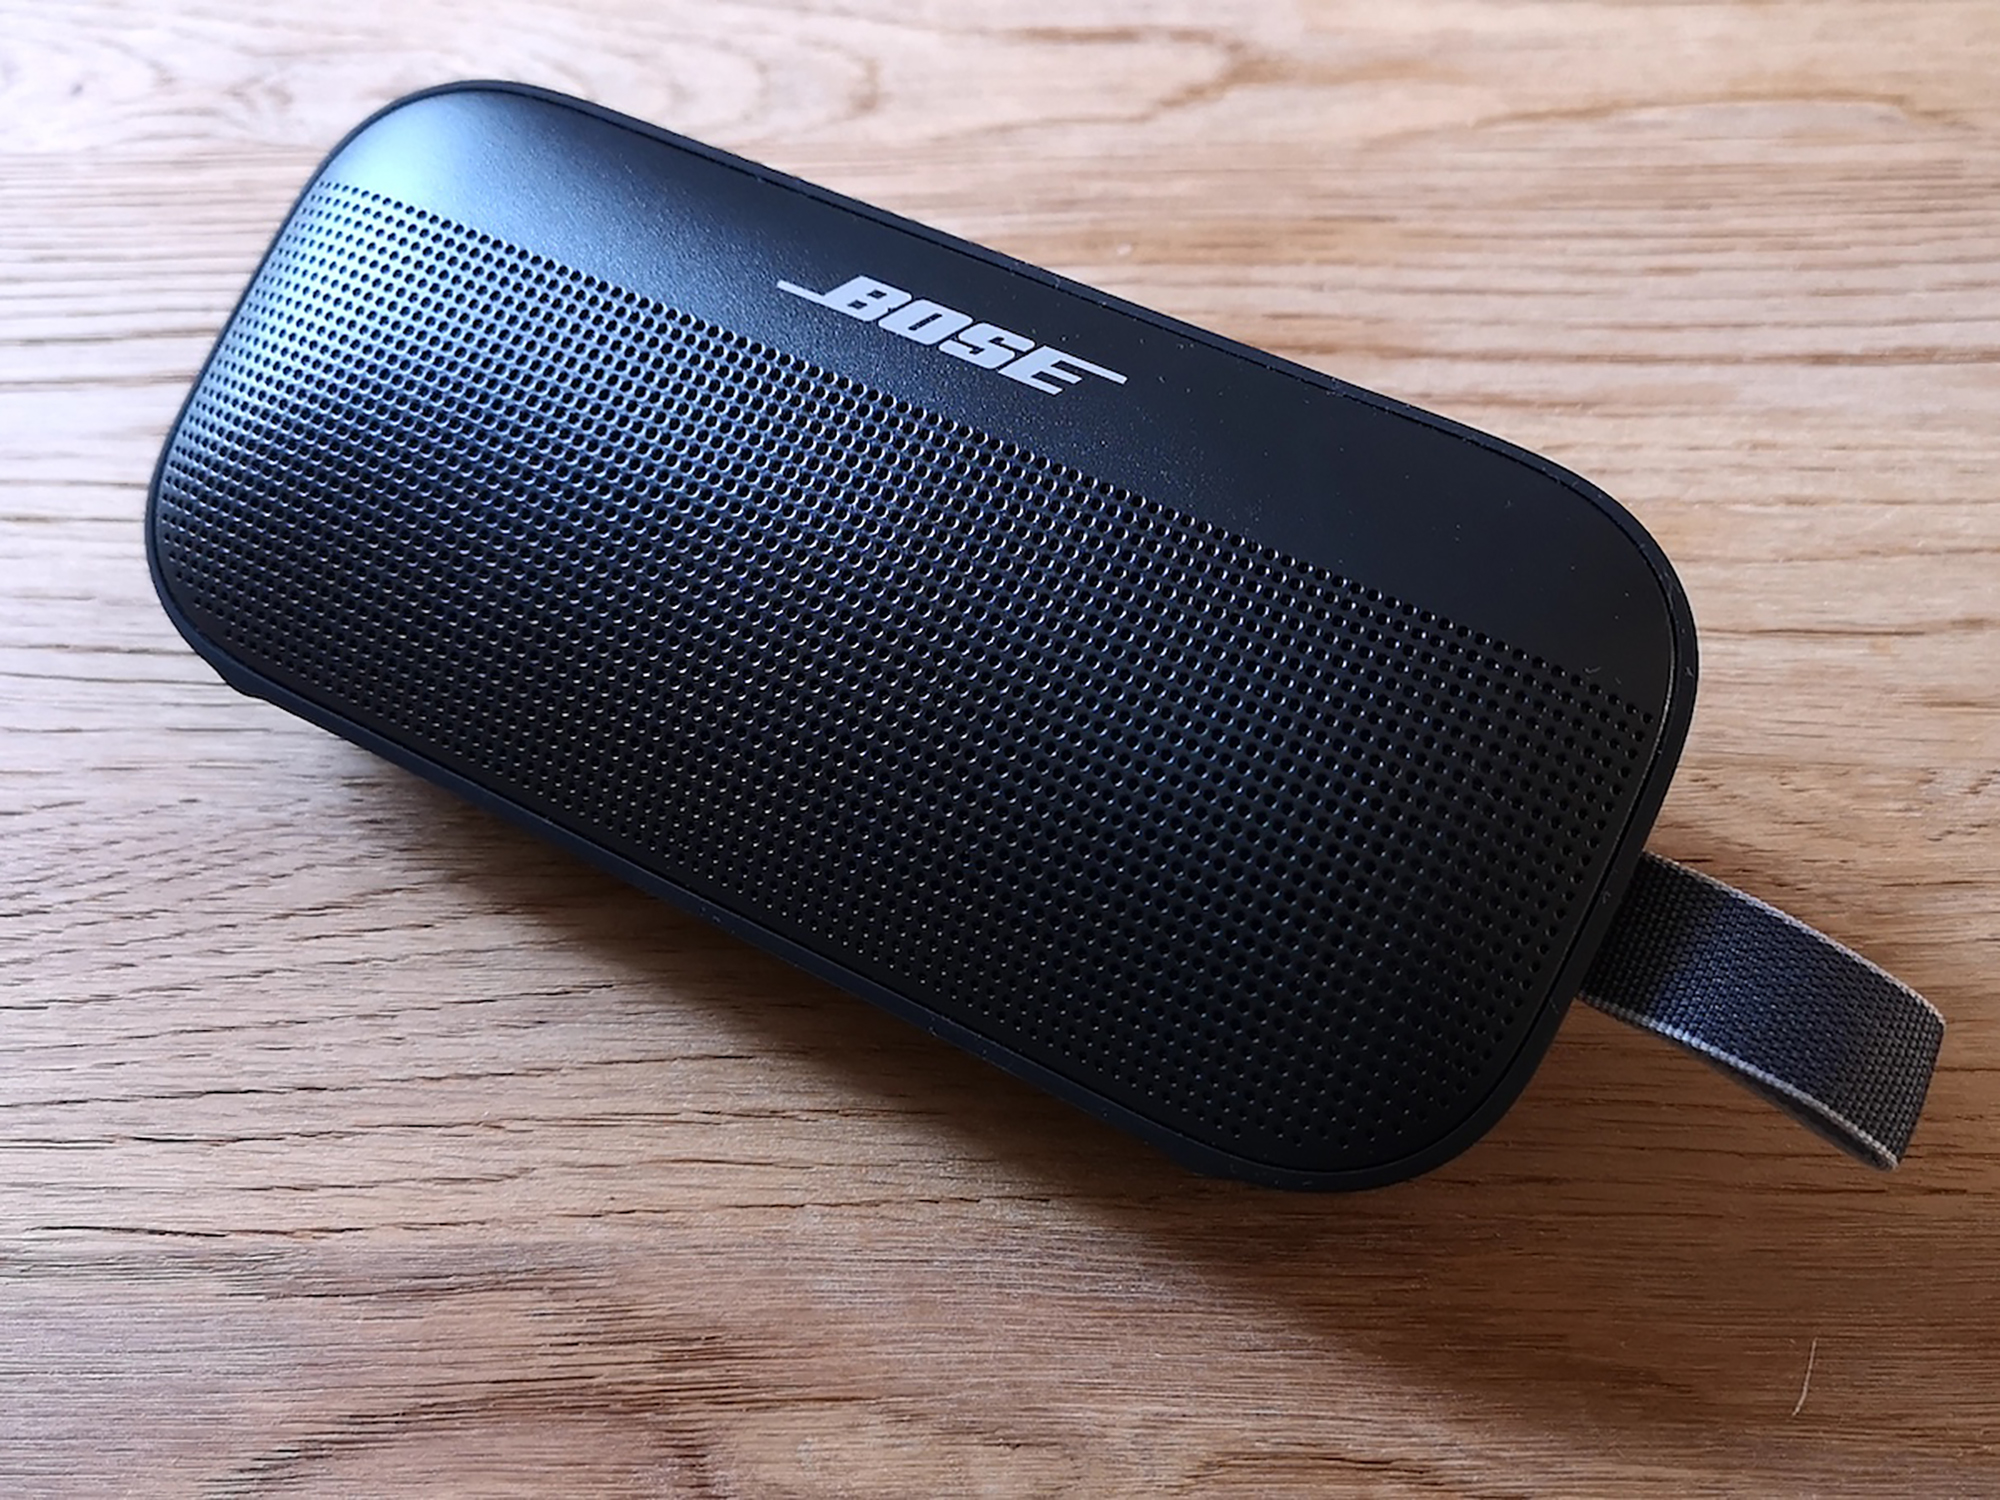 Bose Soundlink Flex Versatile Bluetooth travel speaker punch but works best at home